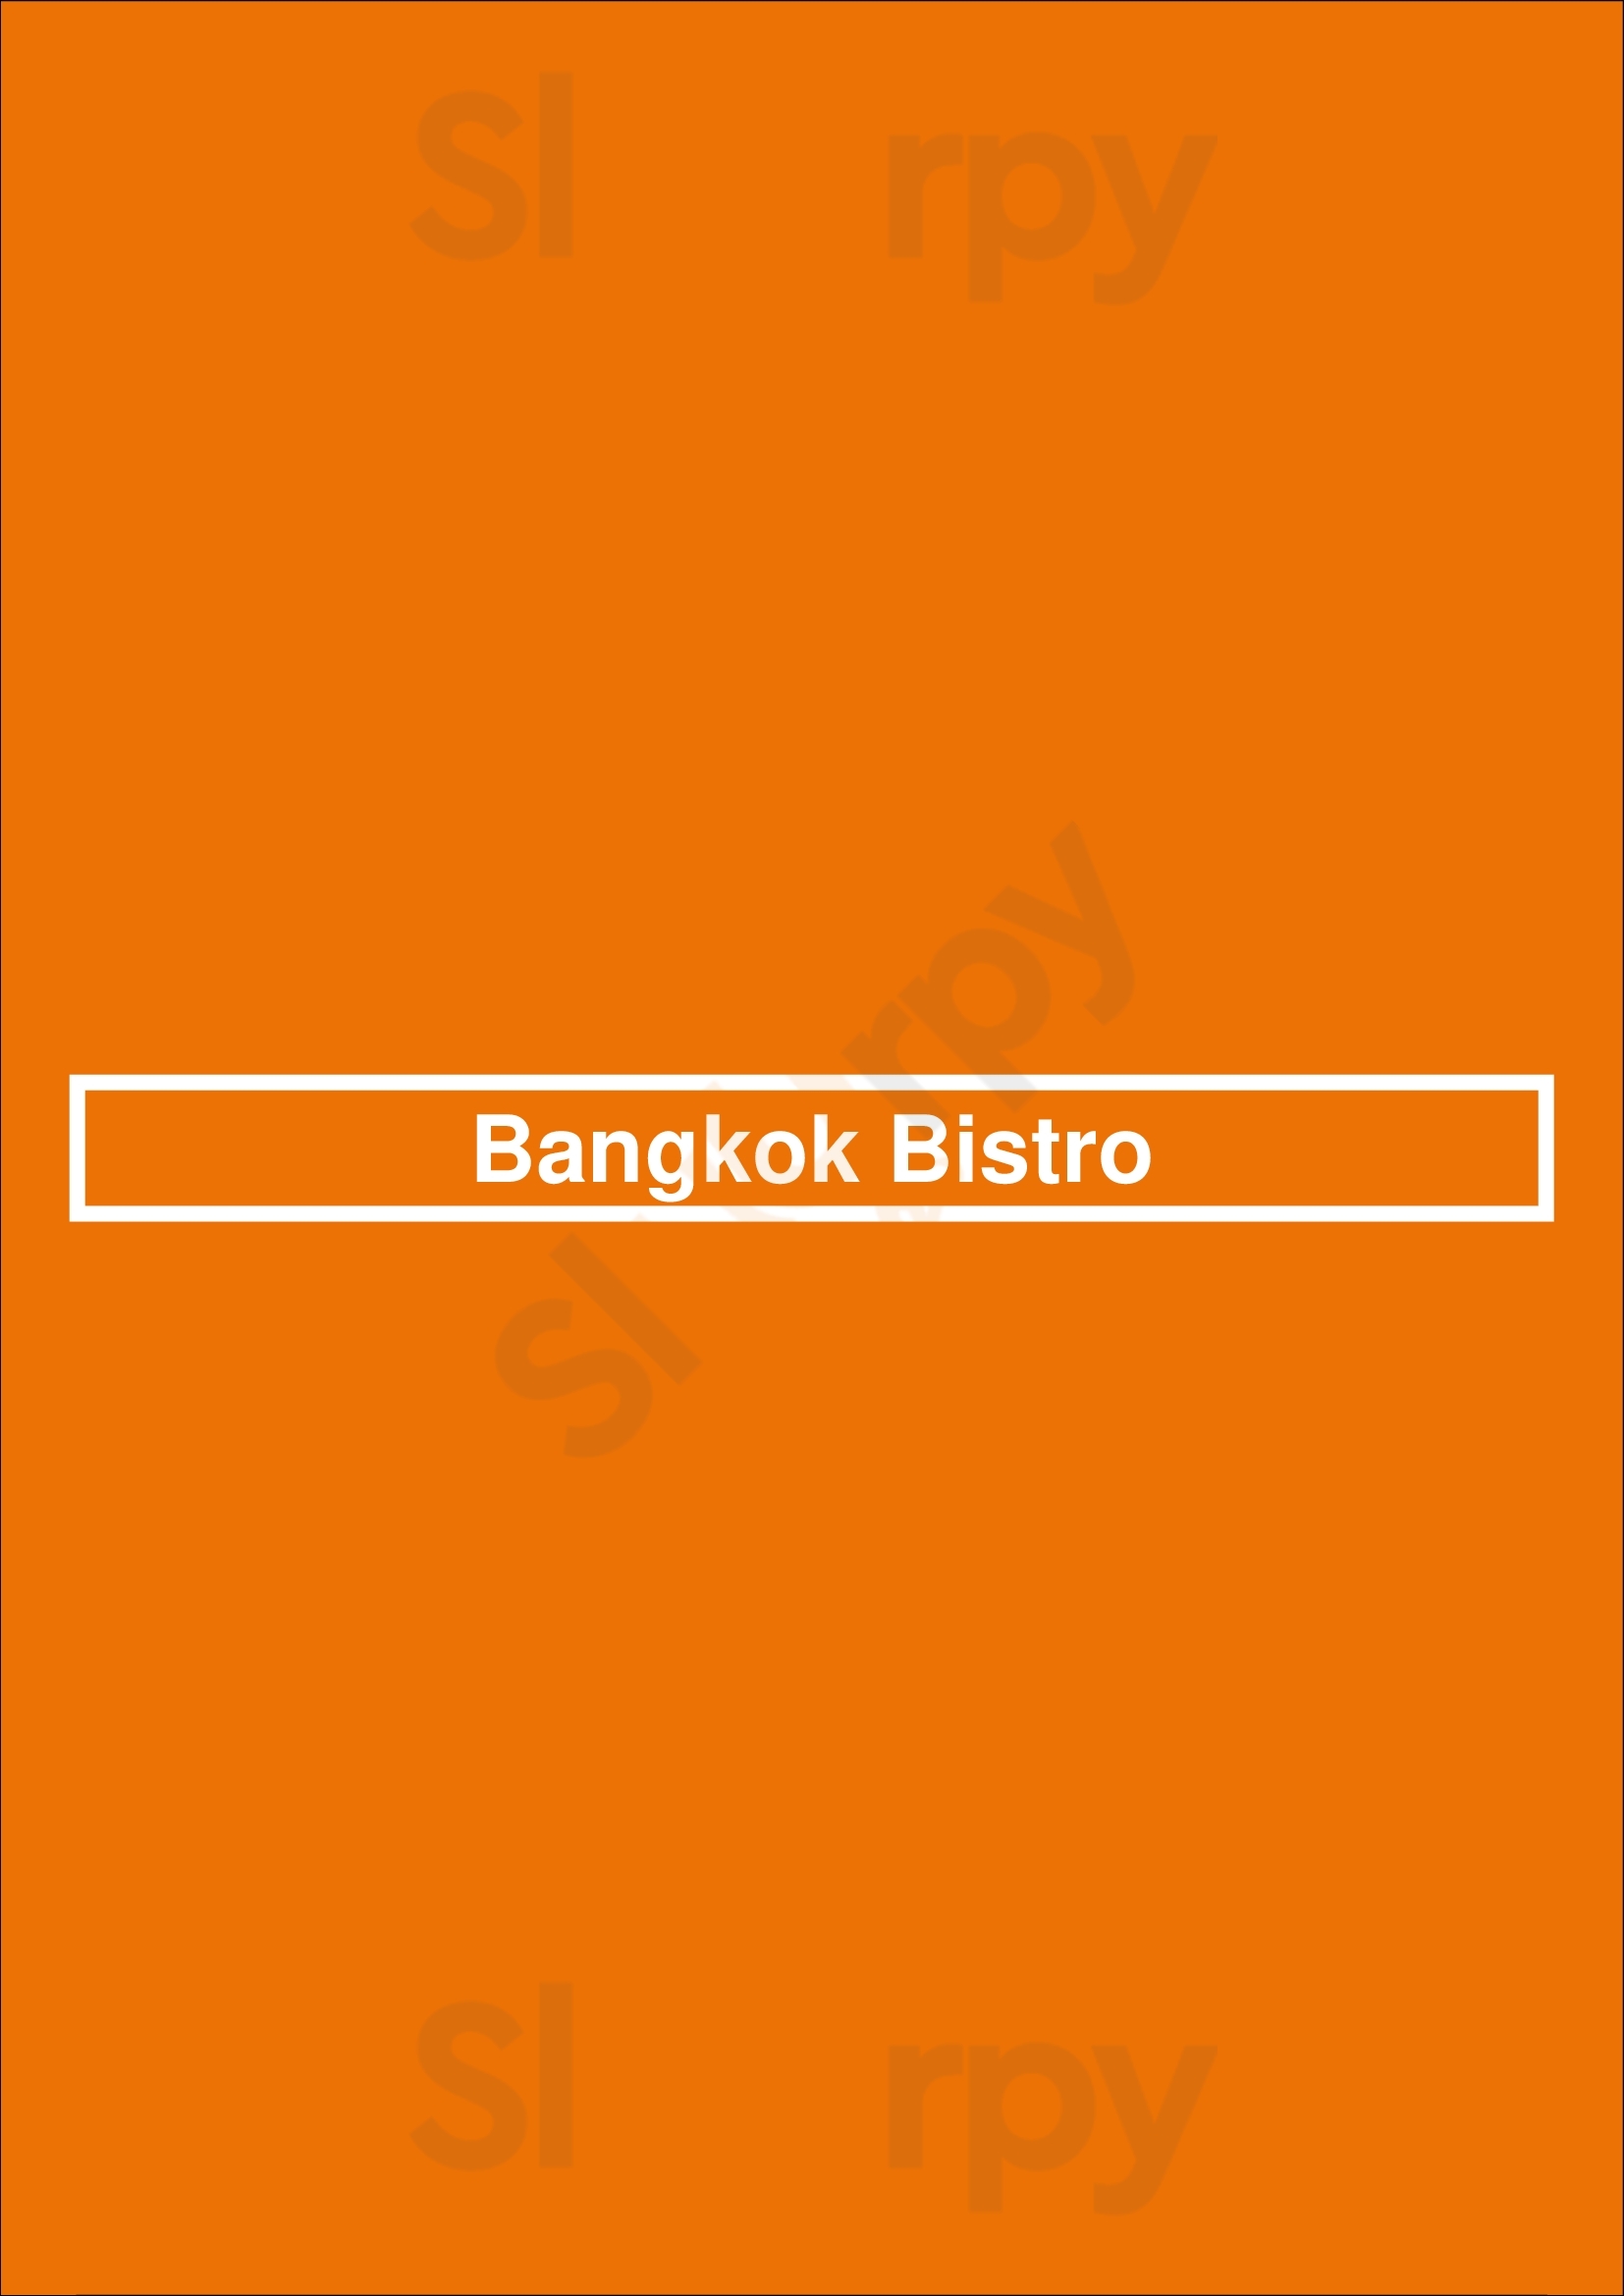 Bangkok Bistro Fort Lauderdale Menu - 1